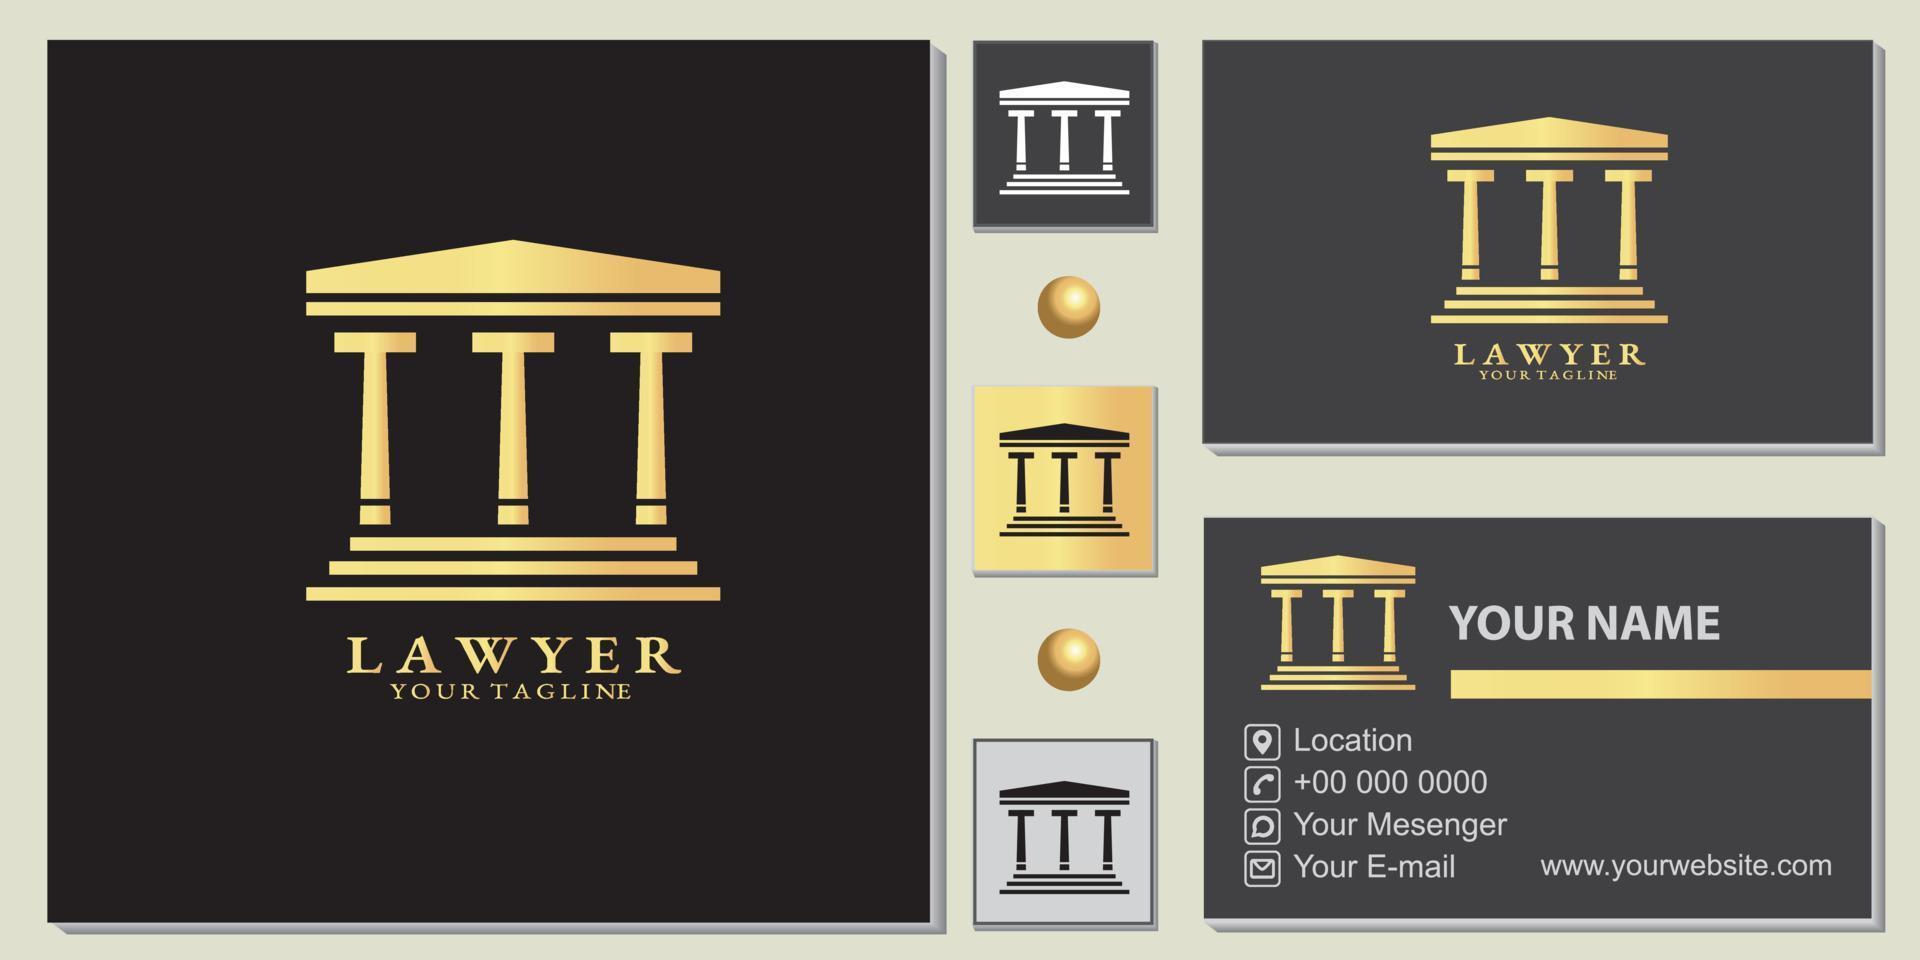 modelo premium de logotipo de pilar de advogado mestre de ouro de luxo com vetor de cartão de visita elegante eps 10